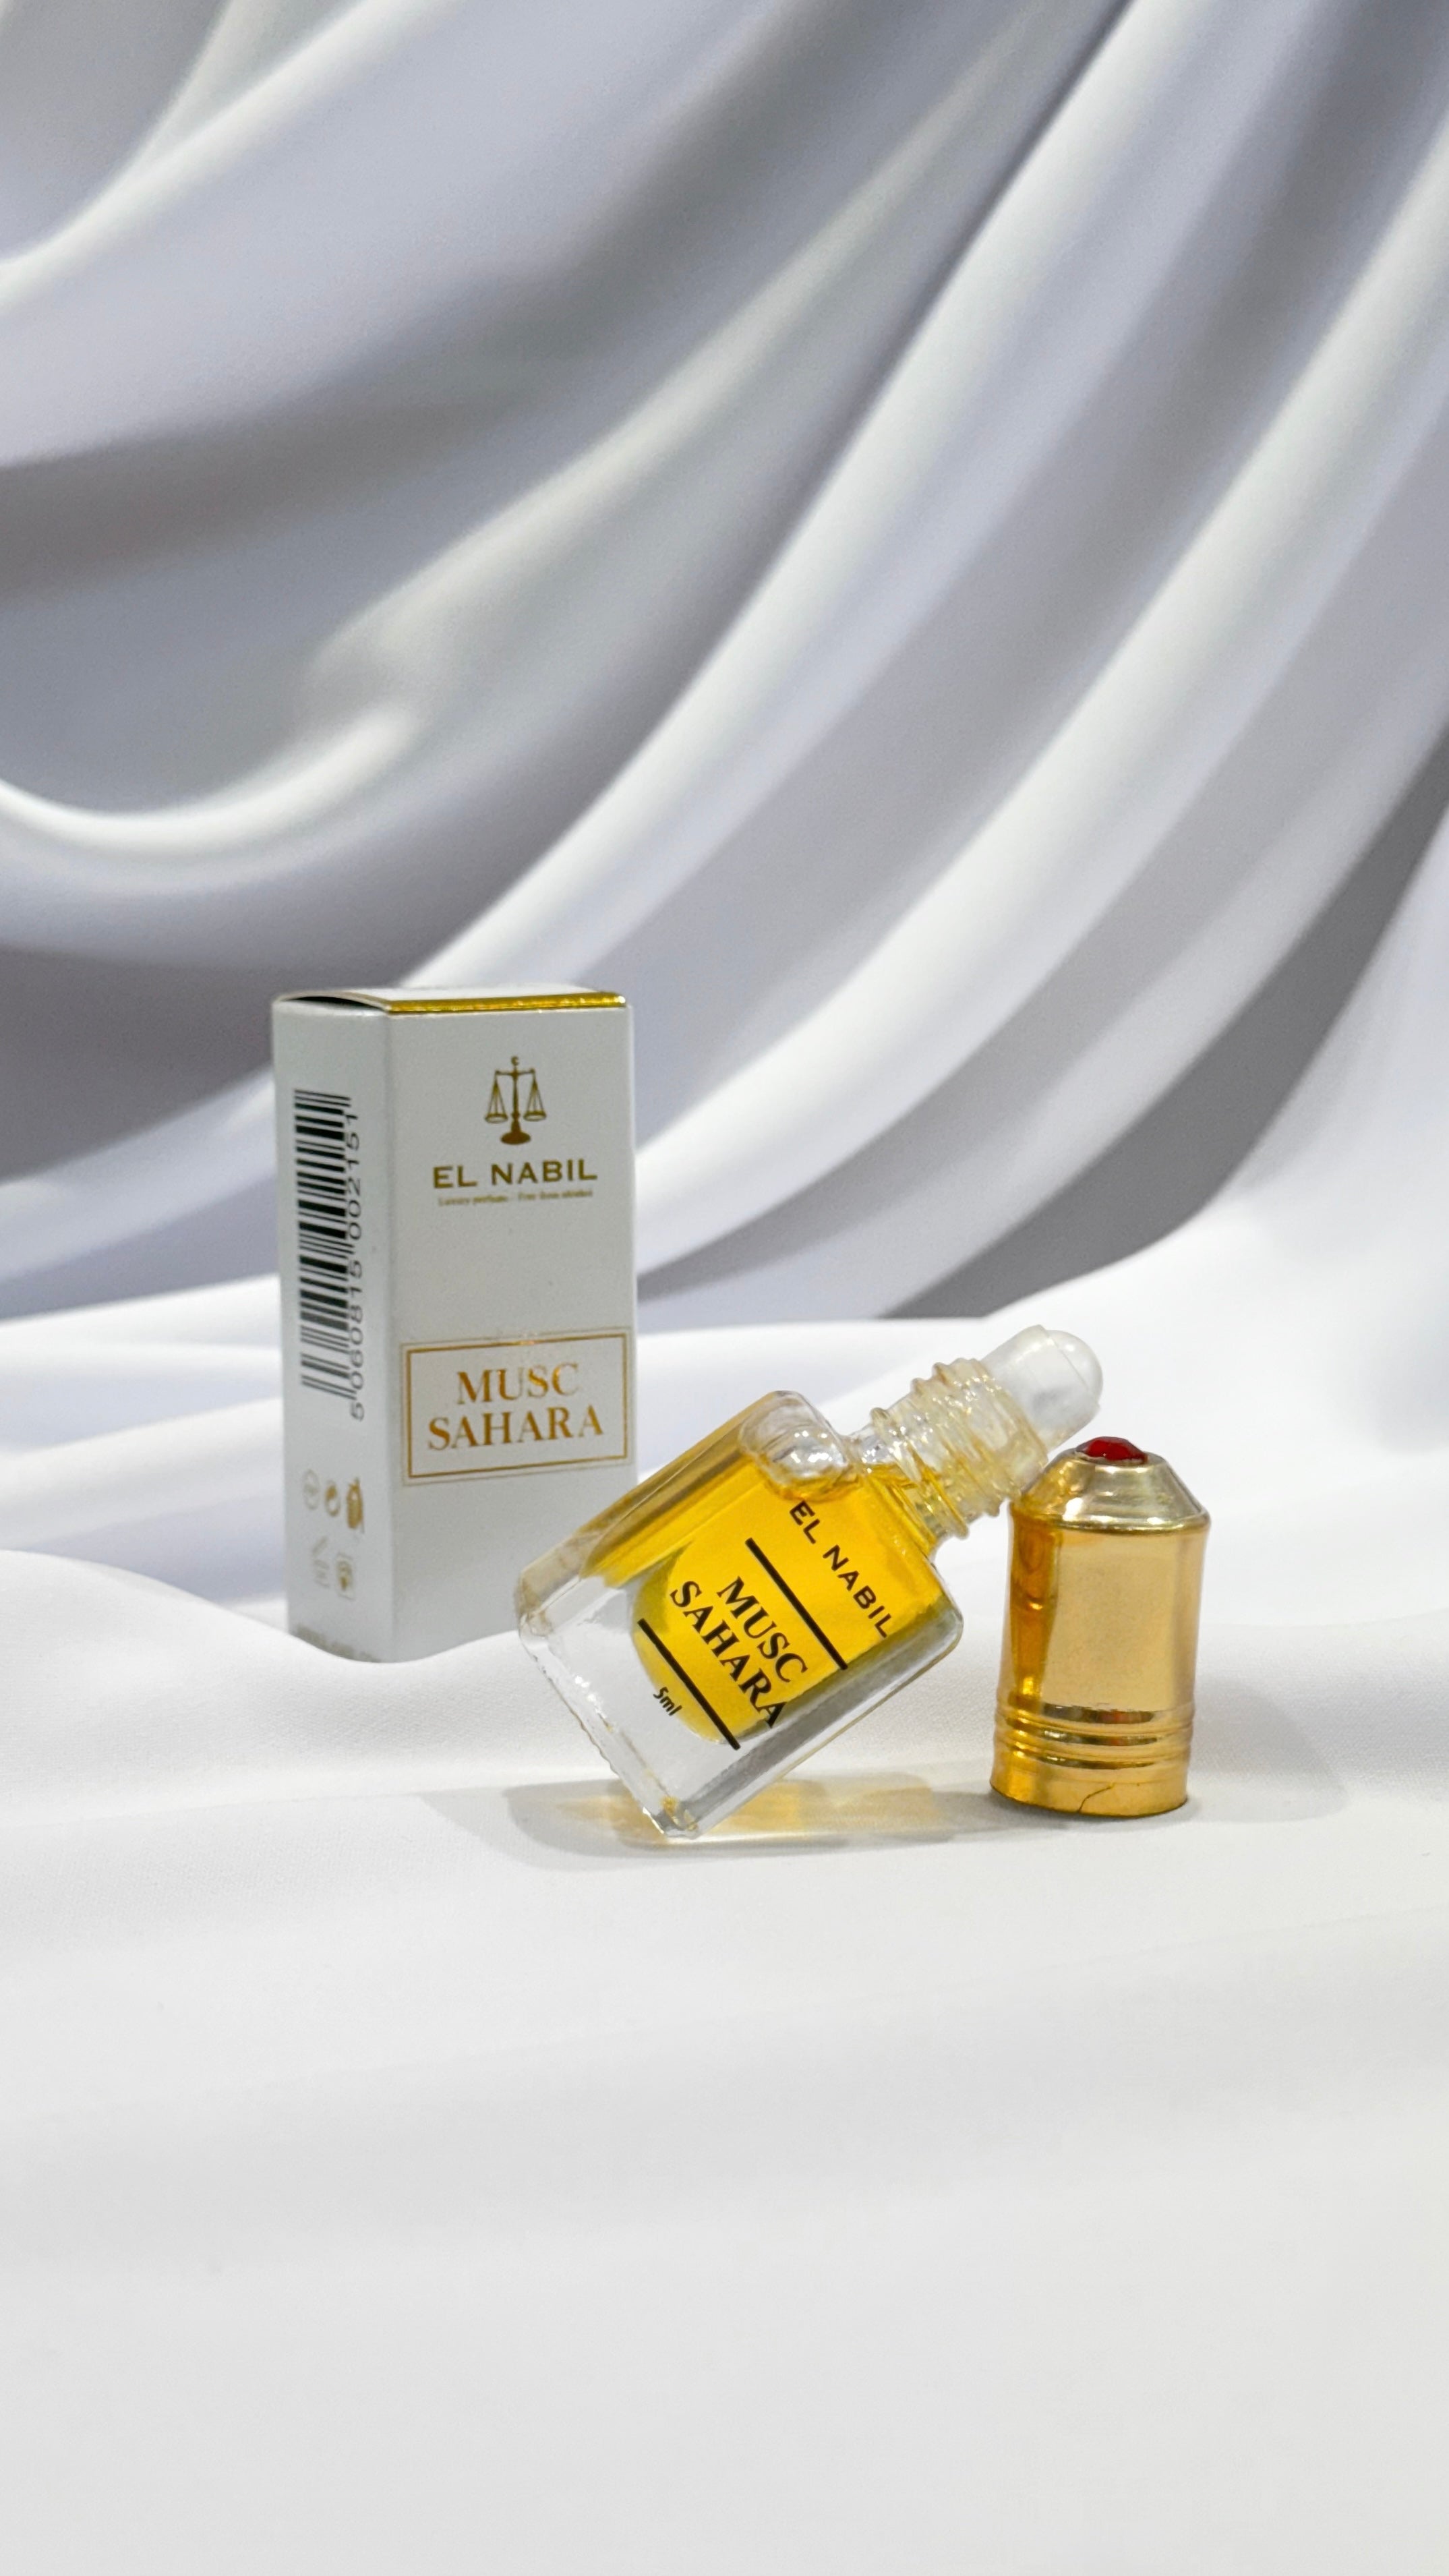 MUSC SAHARA perfume extract